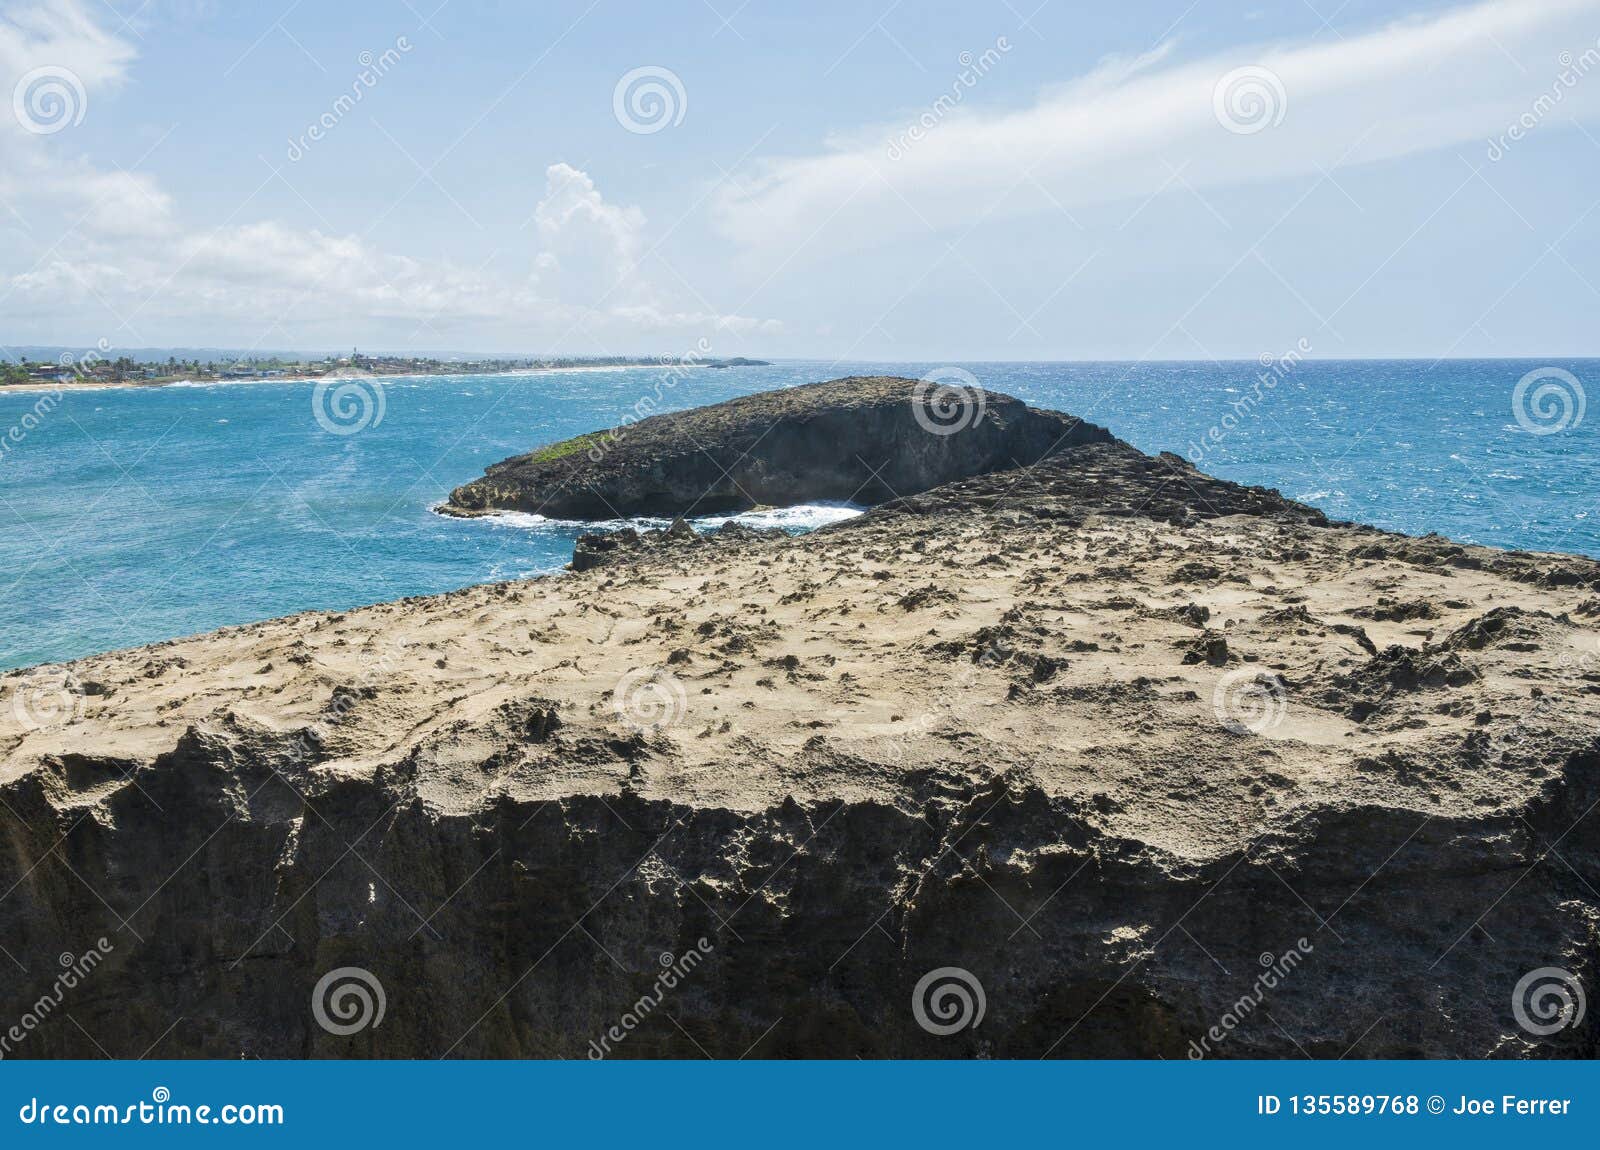 rock forms and islet at cueva del indio